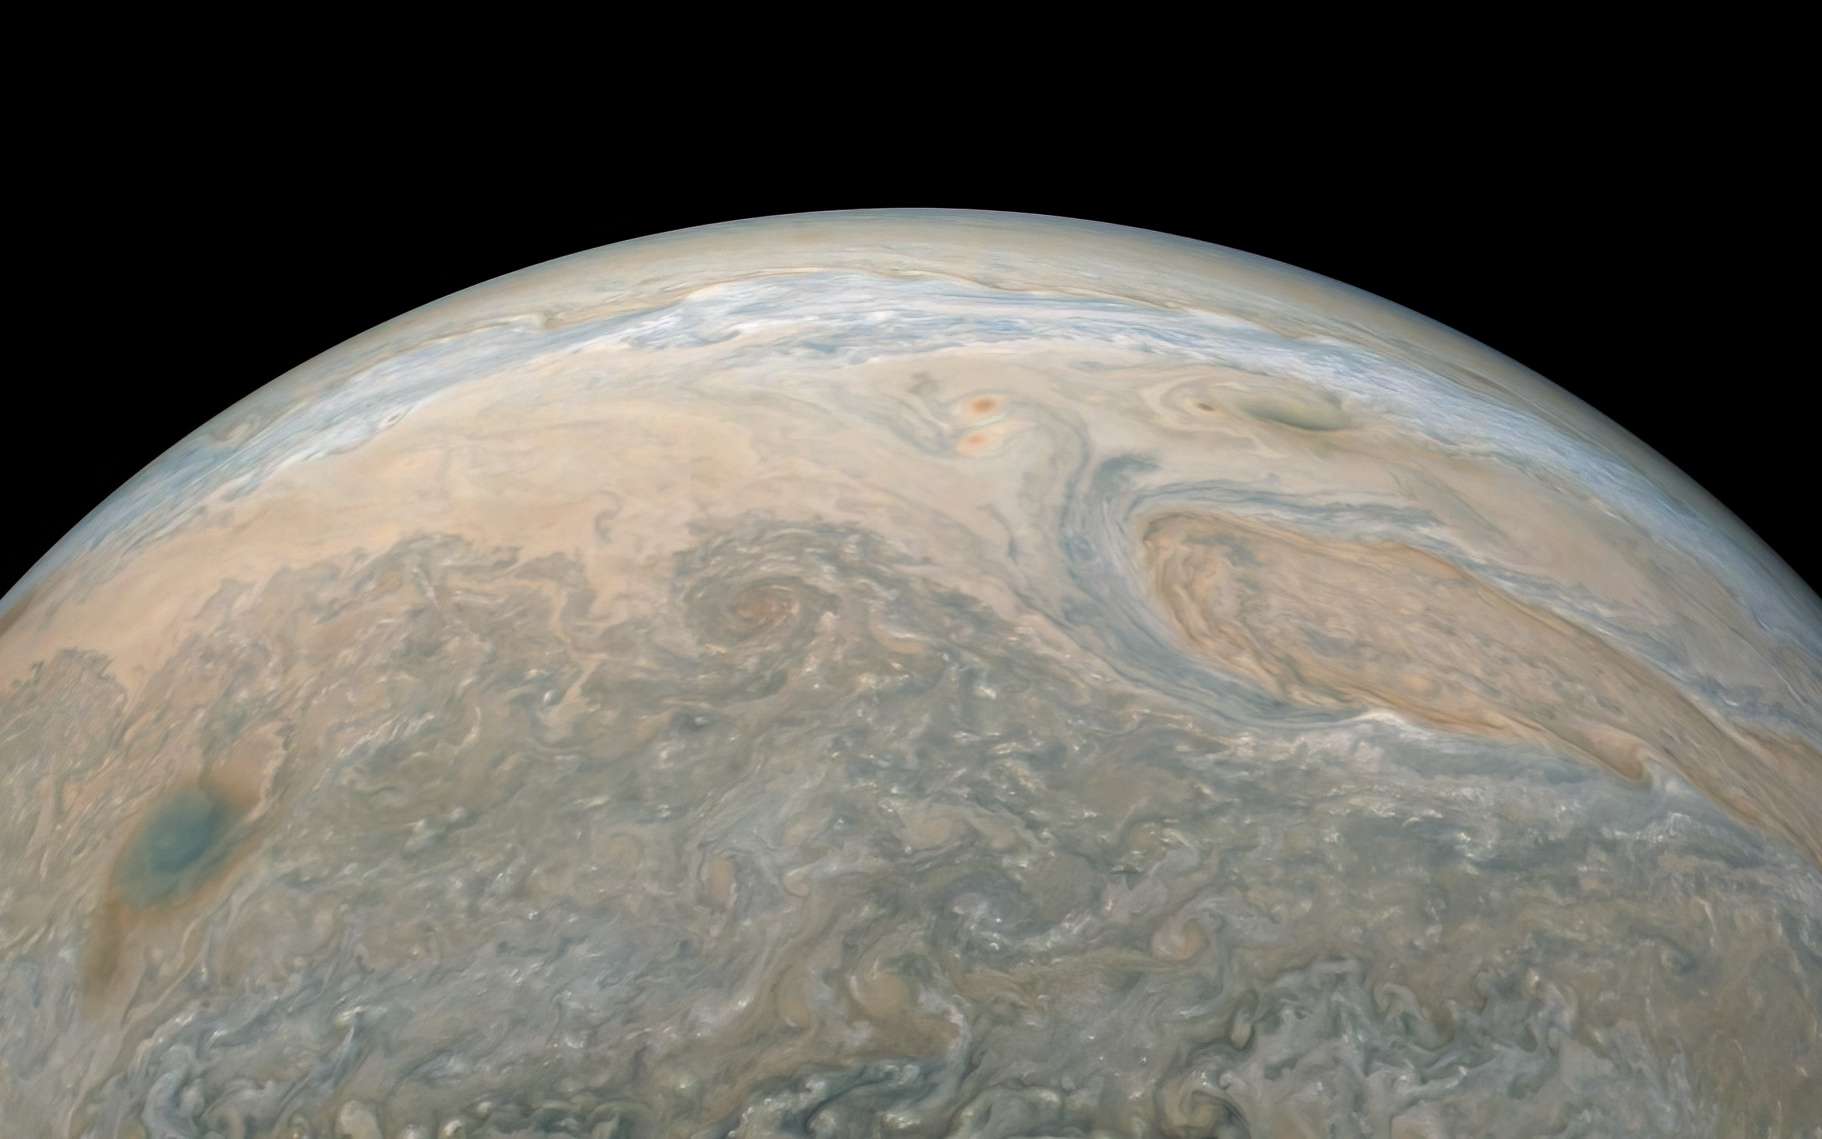 Une vue de Jupiter prise par la sonde spatiale Juno et retravaillé par Kevin M.Gill. © Nasa, JPL-Caltech, SwRI, MSSS, Kevin M. Gill